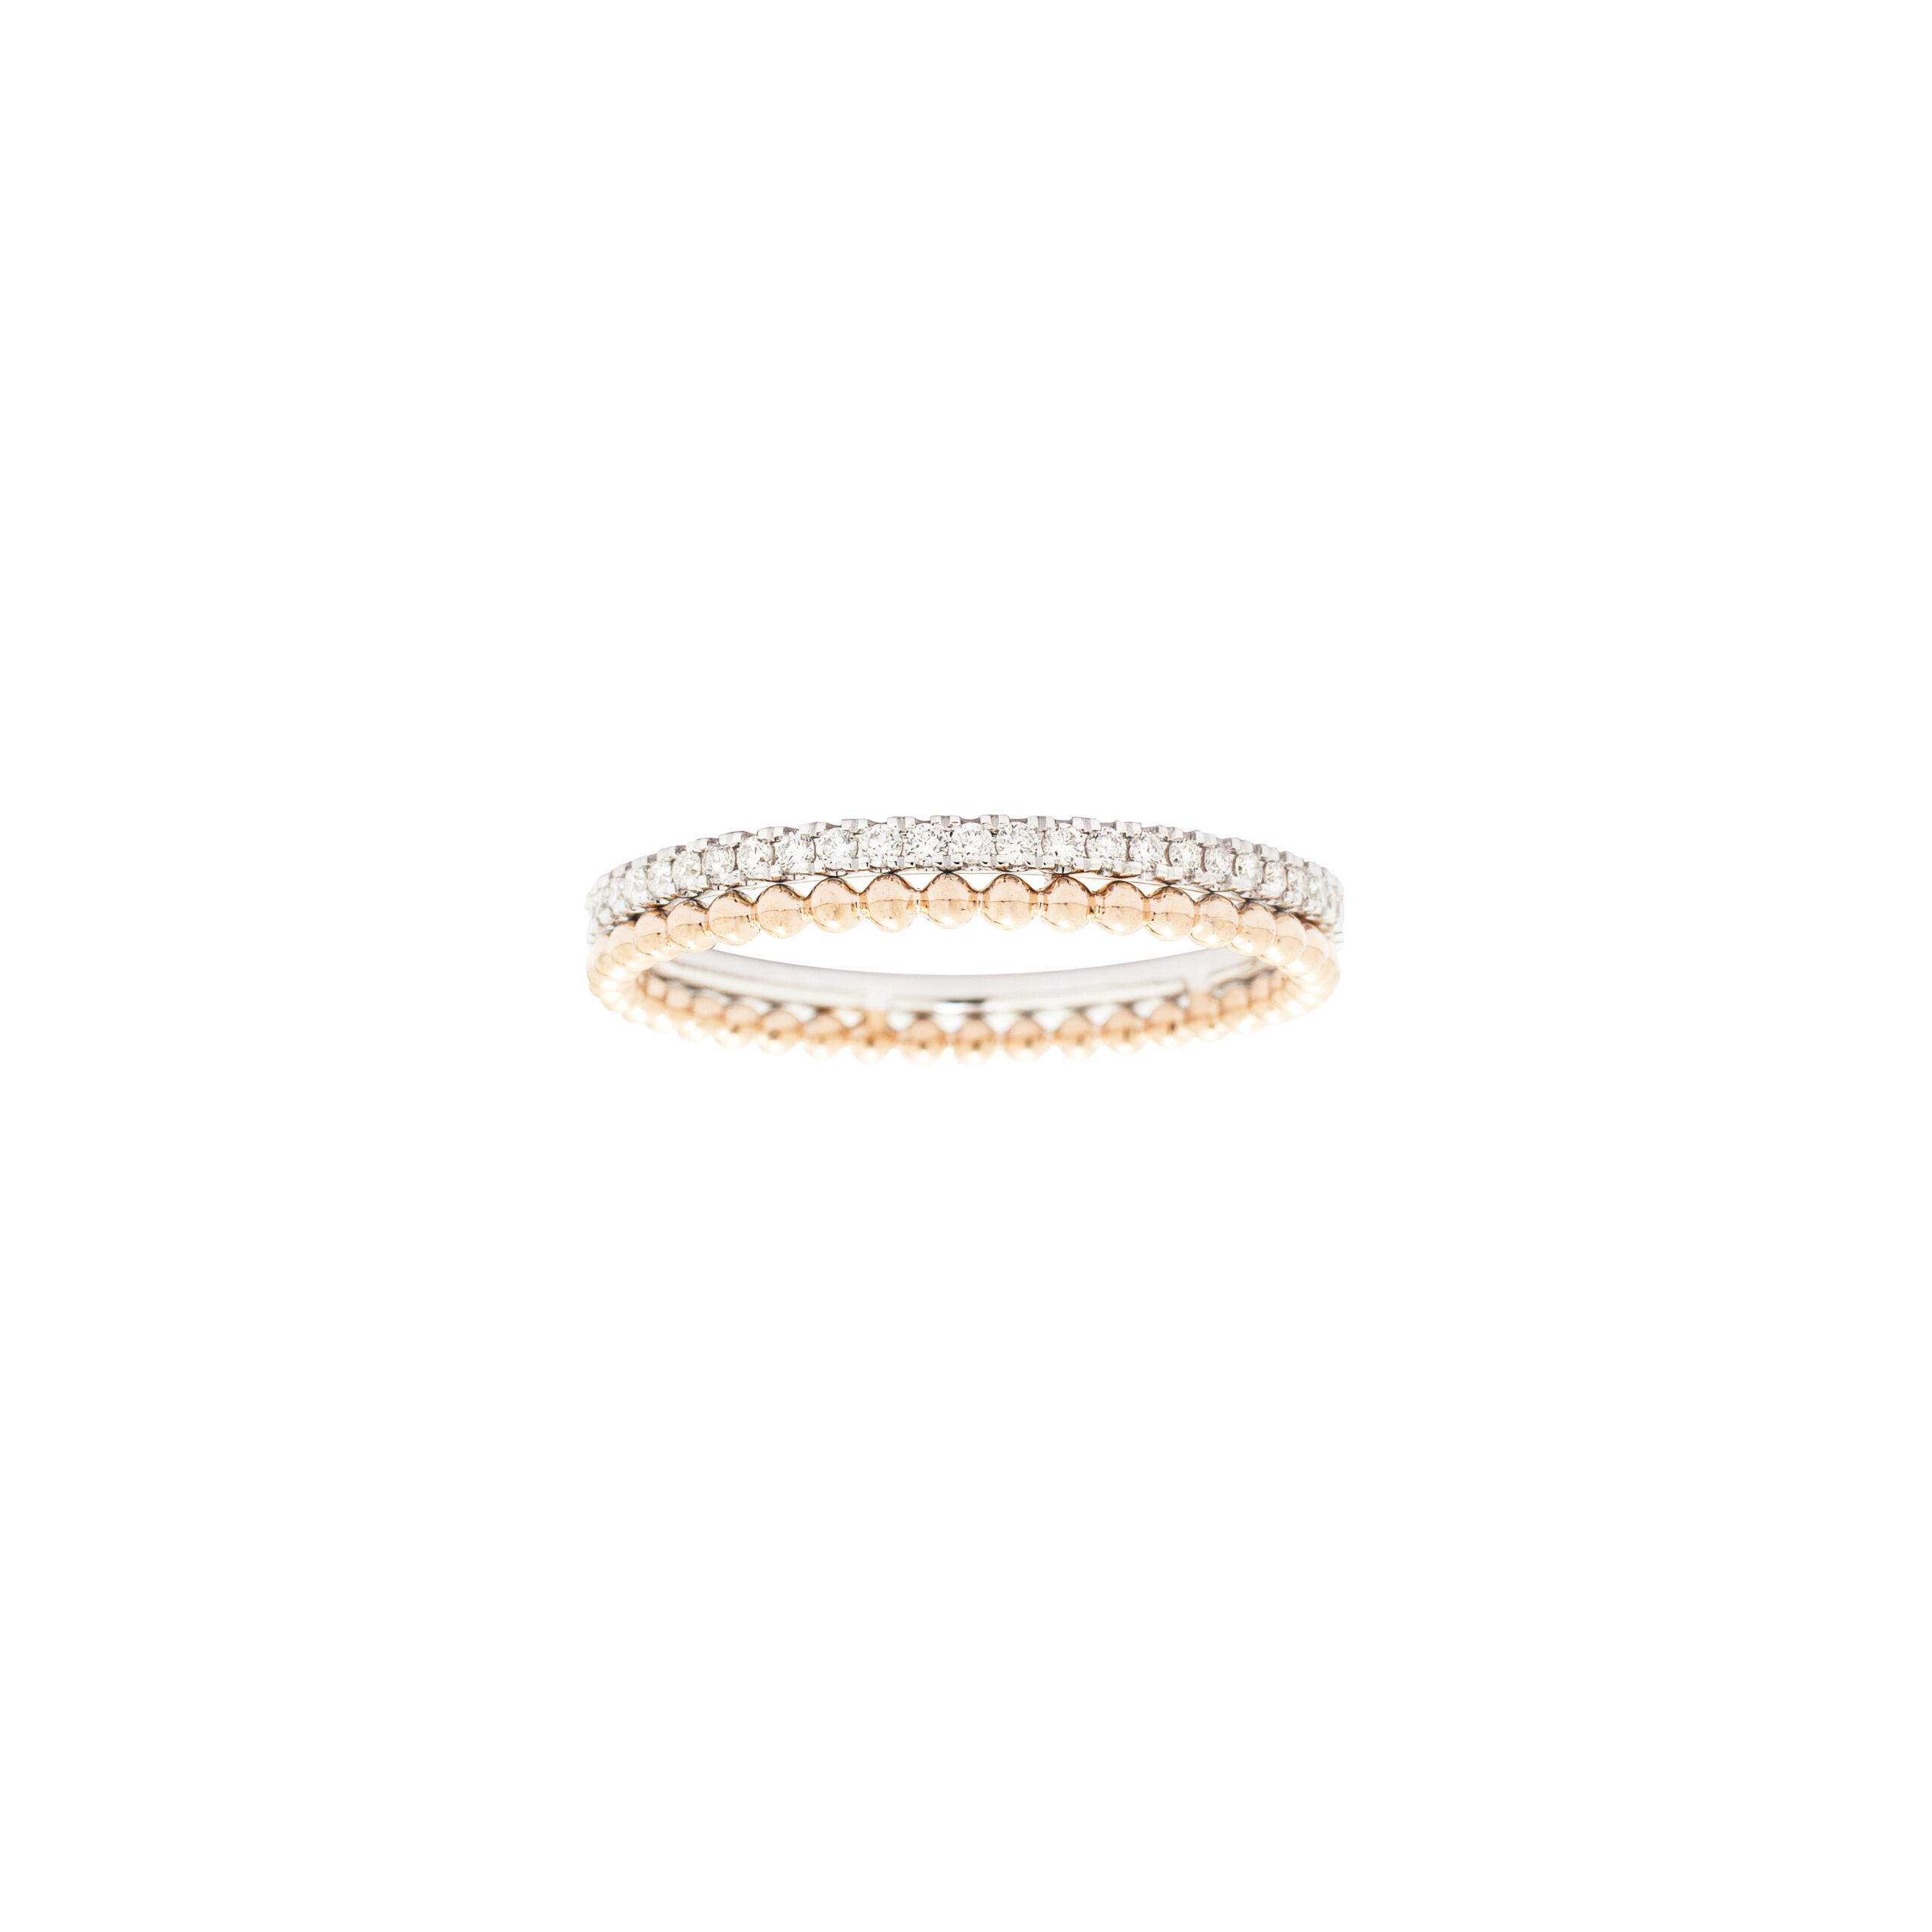 Bague alliance en or rose et blanc et diamants pour femme, bijou de joaillerie fine fabriqué en France, cadeau idéal pour des fiançailles ou un mariage.